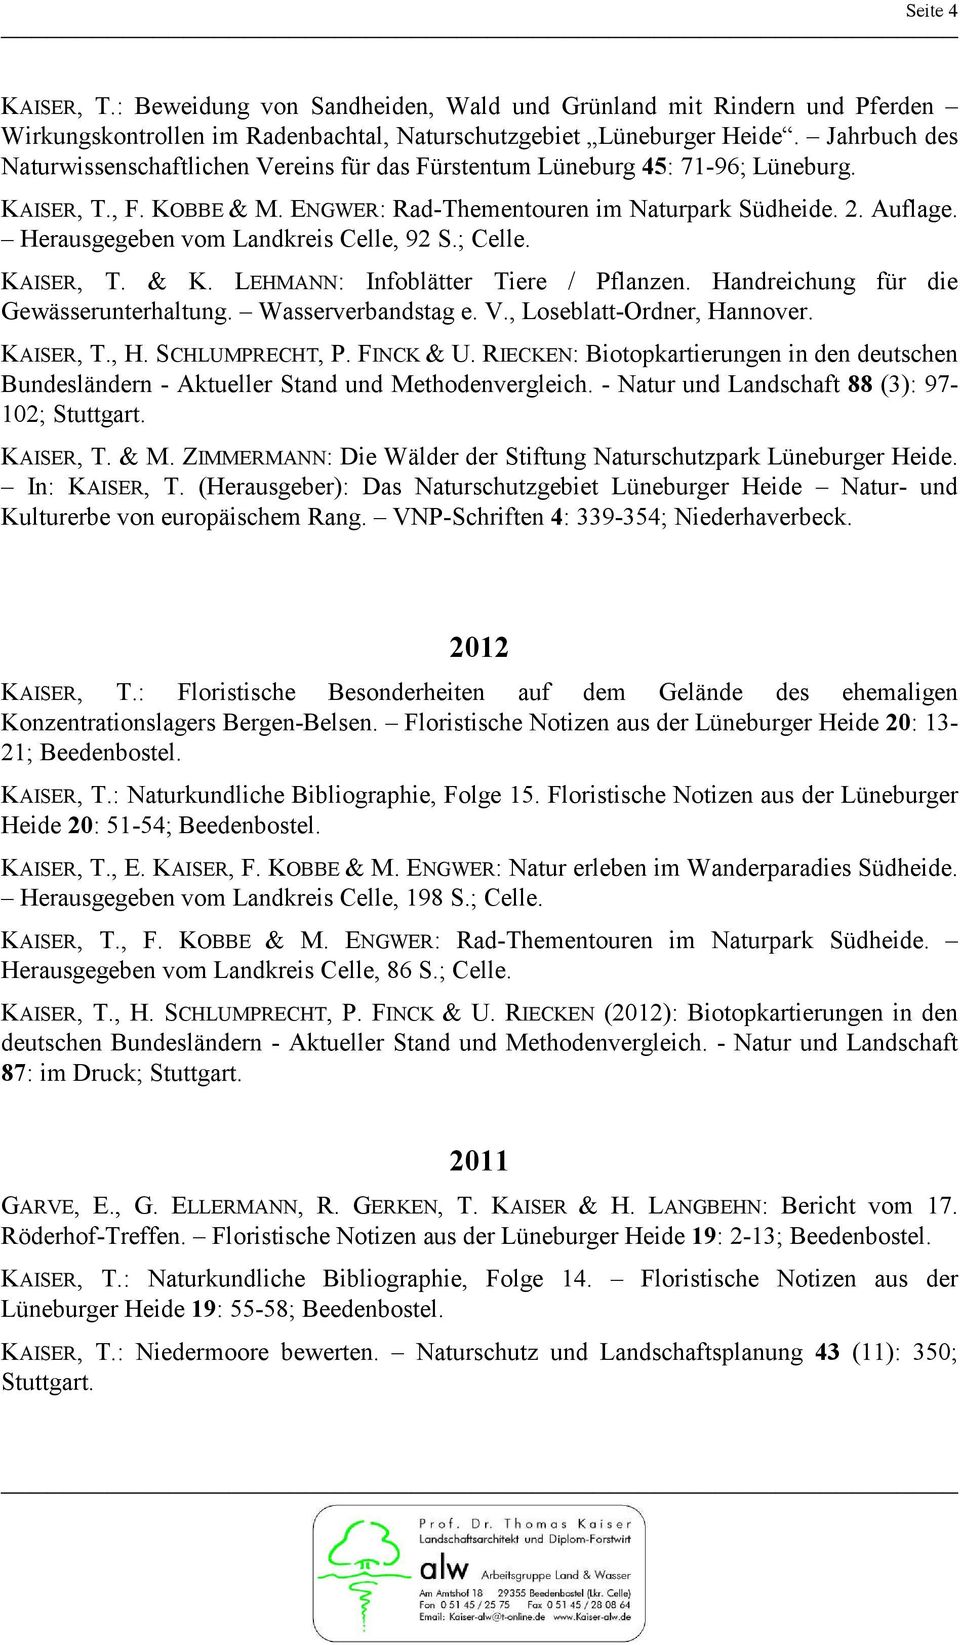 Herausgegeben vom Landkreis Celle, 92 S.; Celle. KAISER, T. & K. LEHMANN: Infoblätter Tiere / Pflanzen. Handreichung für die Gewässerunterhaltung. Wasserverbandstag e. V., Loseblatt-Ordner, Hannover.